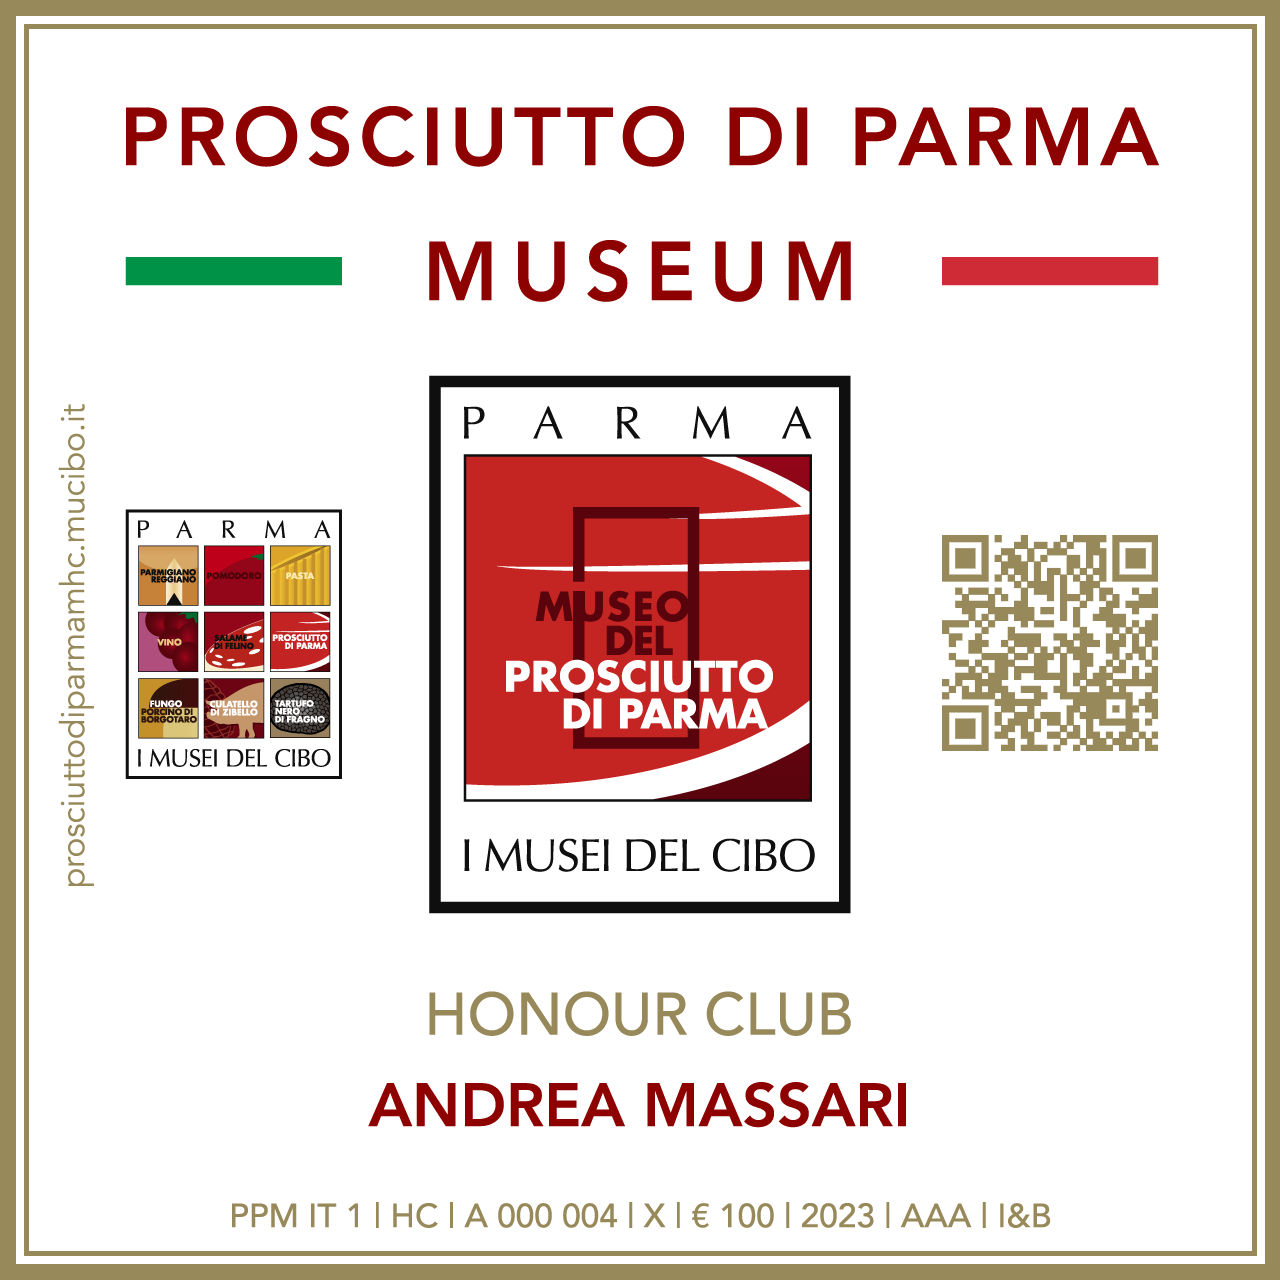 Prosciutto di Parma Museum Honour Club - Token Id A 000 004 - ANDREA MASSARI